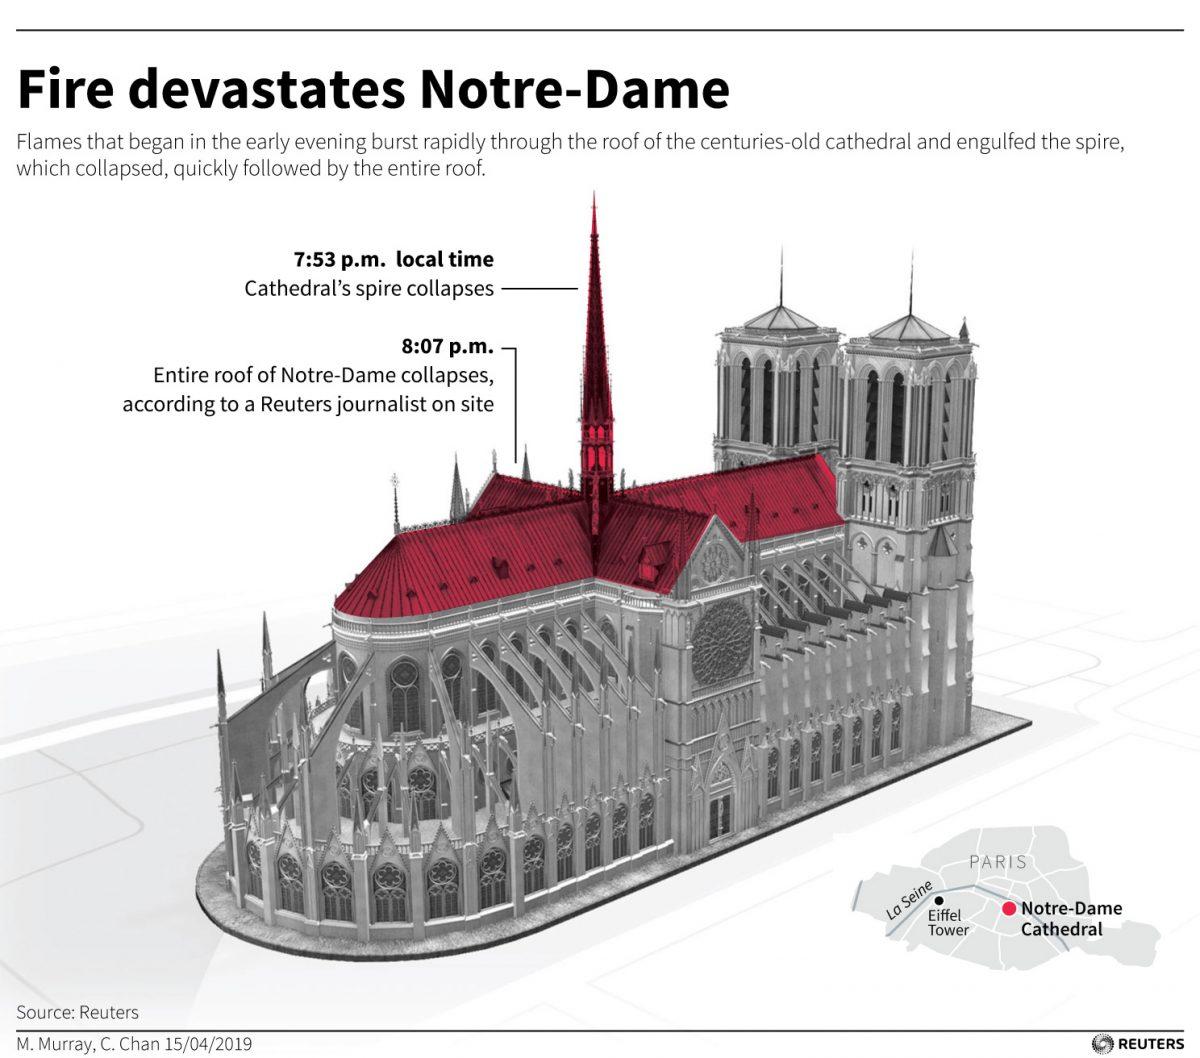 Fire devastates Notre-Dame in Paris, France, on April 16, 2019. (M. Murray. C. Chan/Reuters)